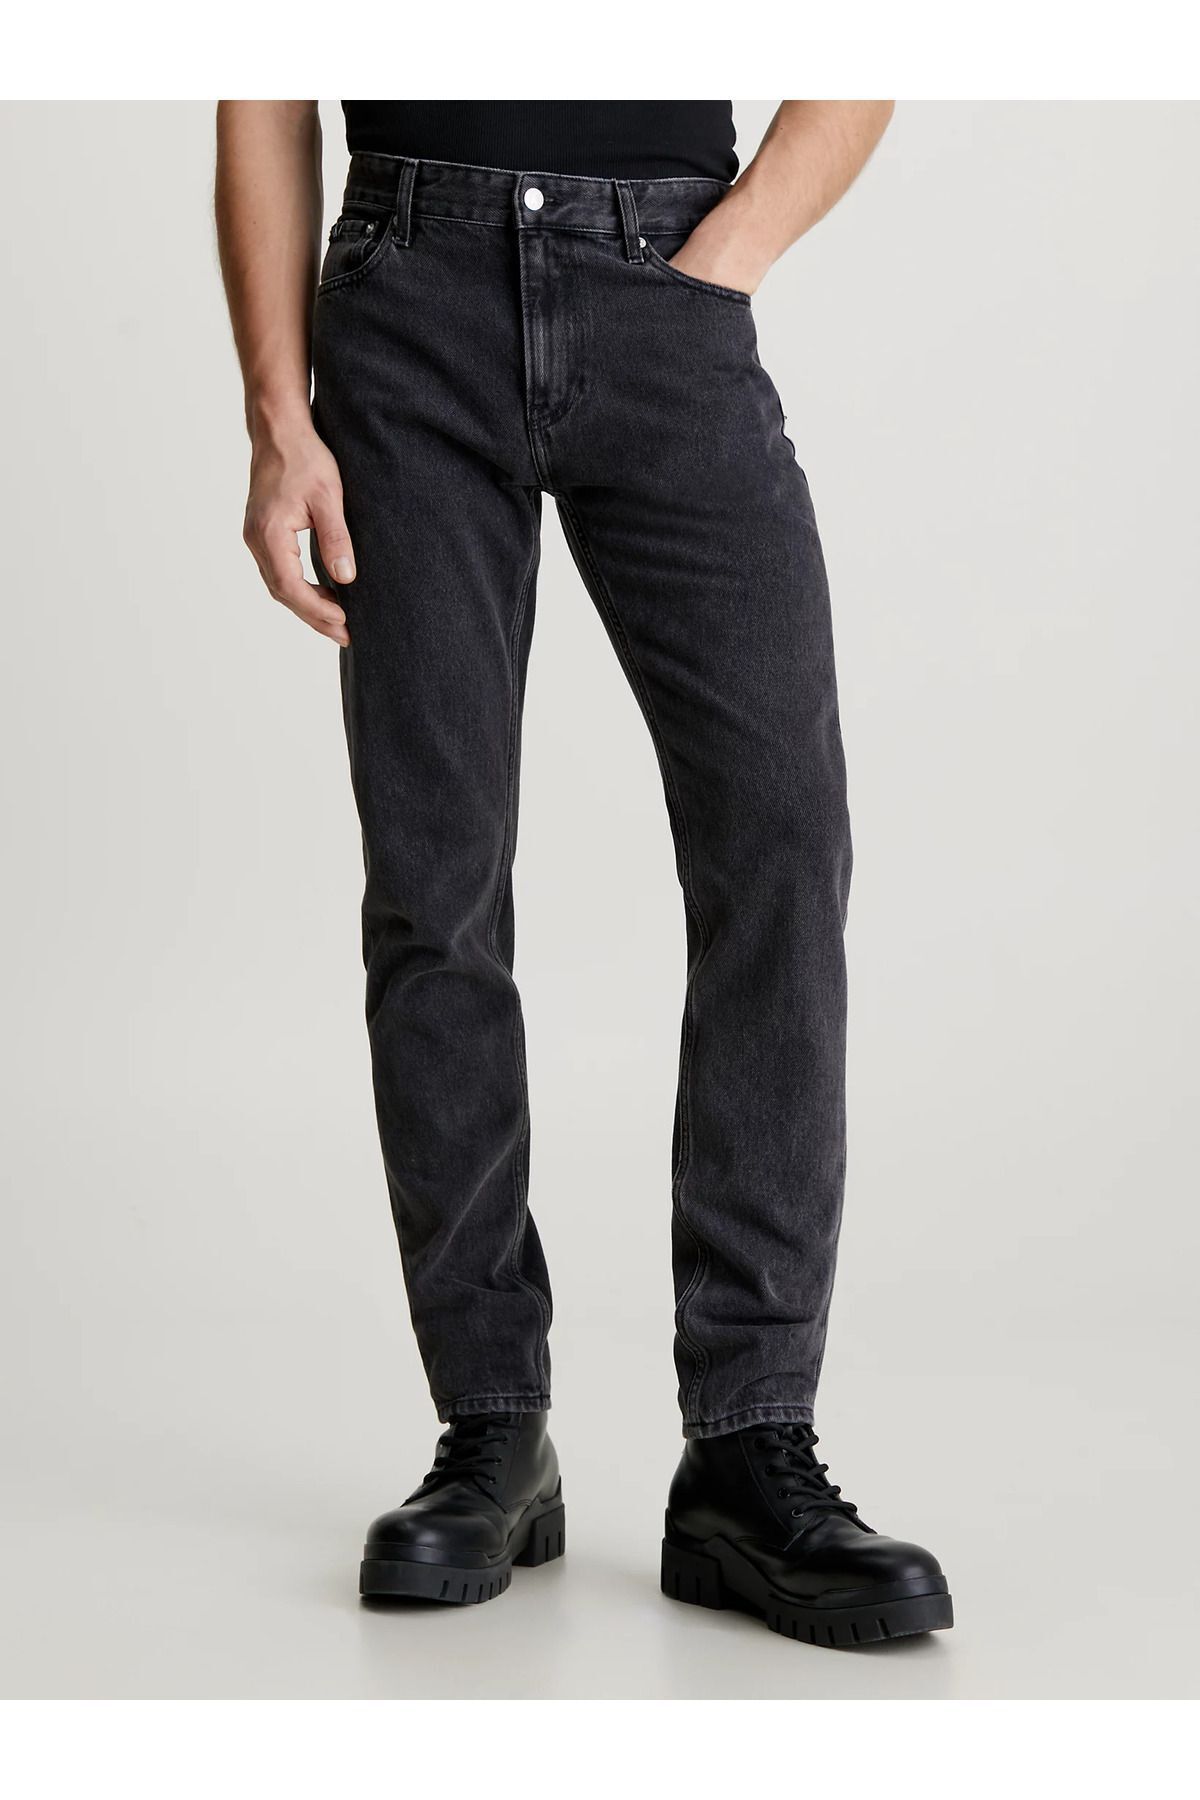 Calvin Klein Erkek Pamuklu Normal Bel 5 Cepli Düğmeli Siyah Jeans J30J324562-1BY